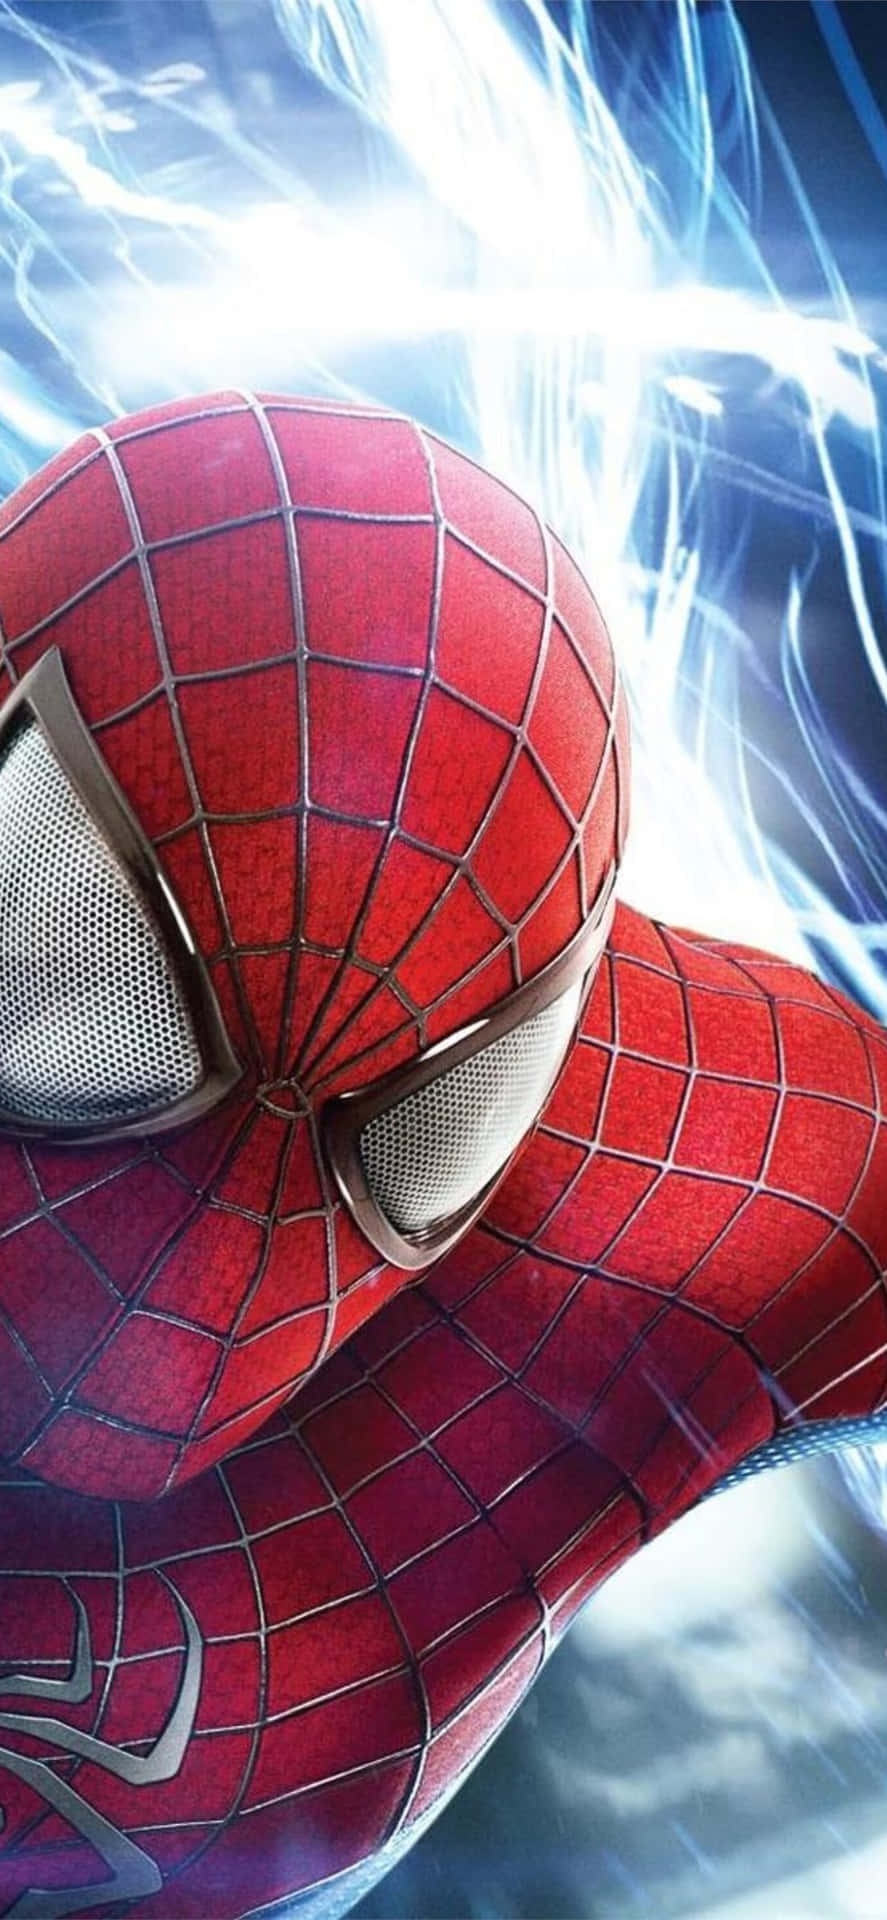 Portain Vita Il Tuo Marvel Avenger Preferito Con L'iphone Amazing Spider-man. Sfondo